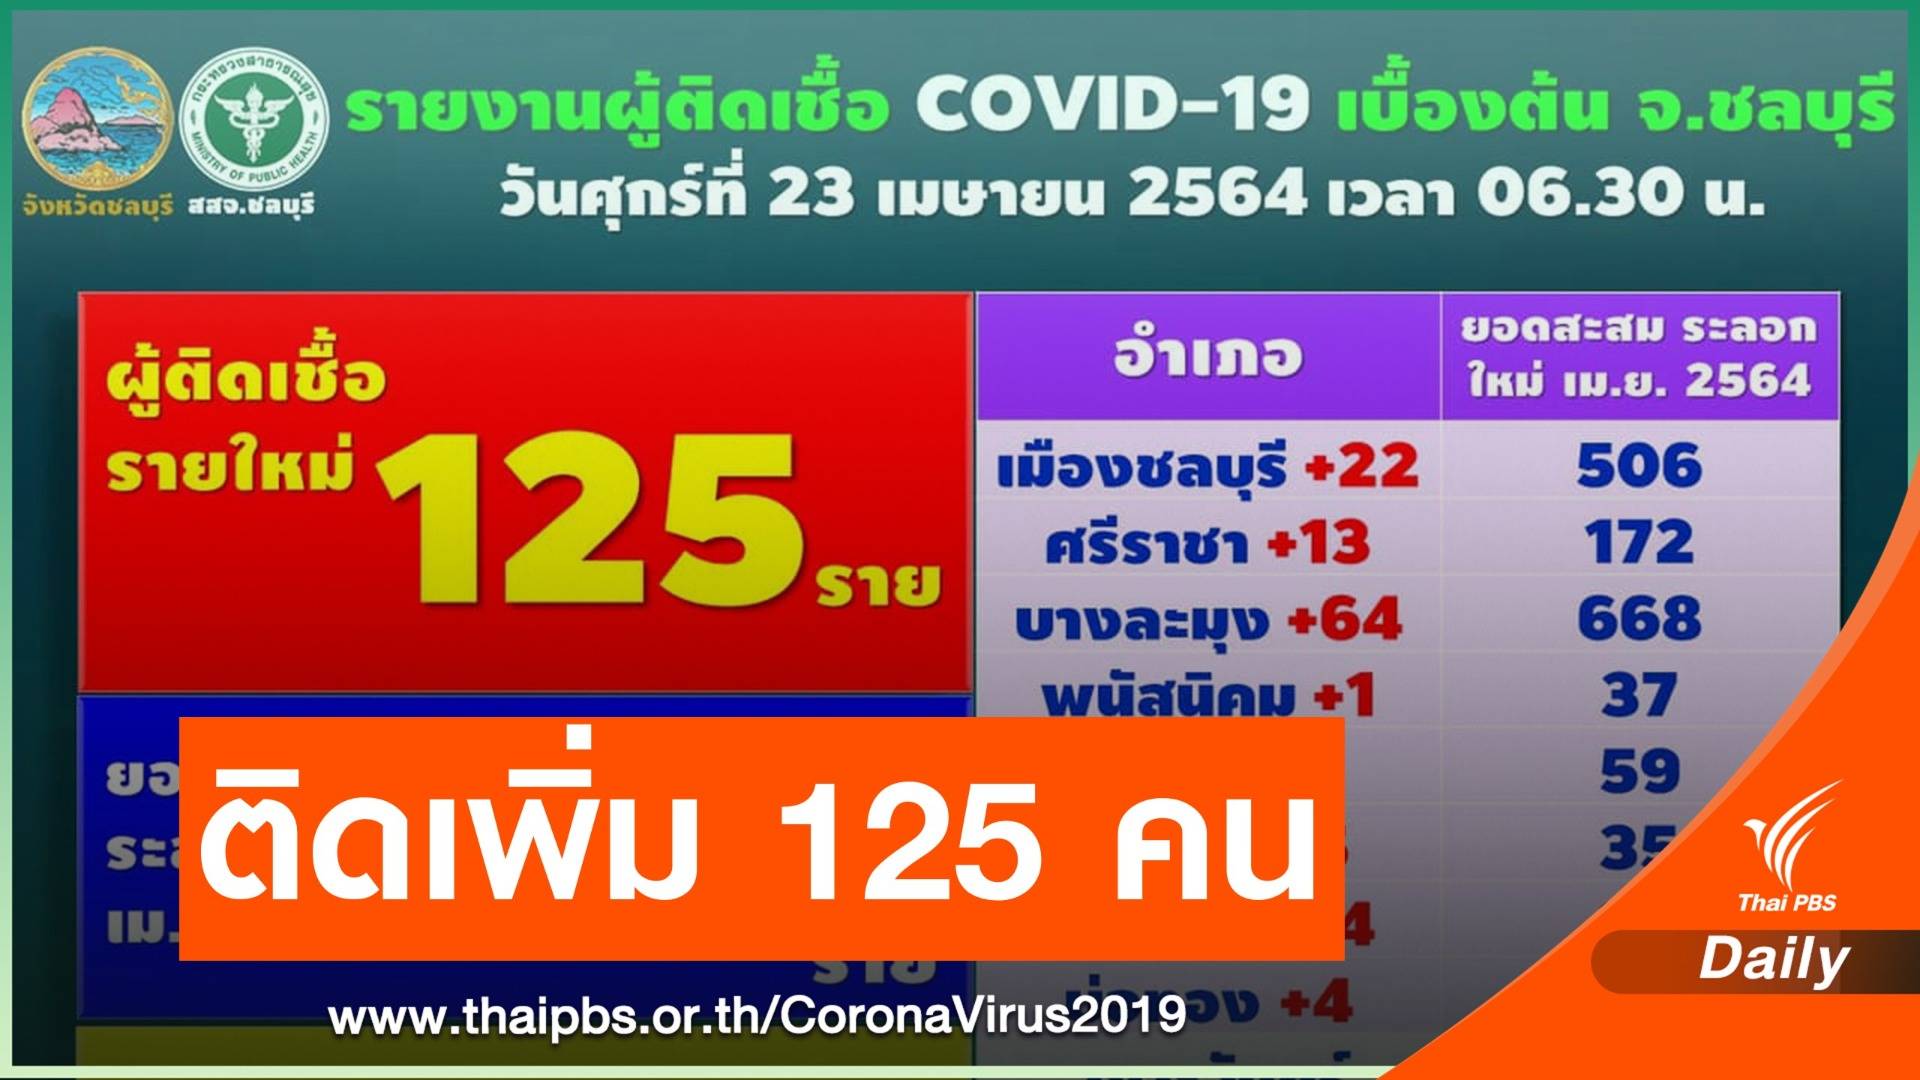 ชลบุรี ติด COVID-19 เพิ่ม 125 คน เป็นบุคลากรแพทย์ 8 คน